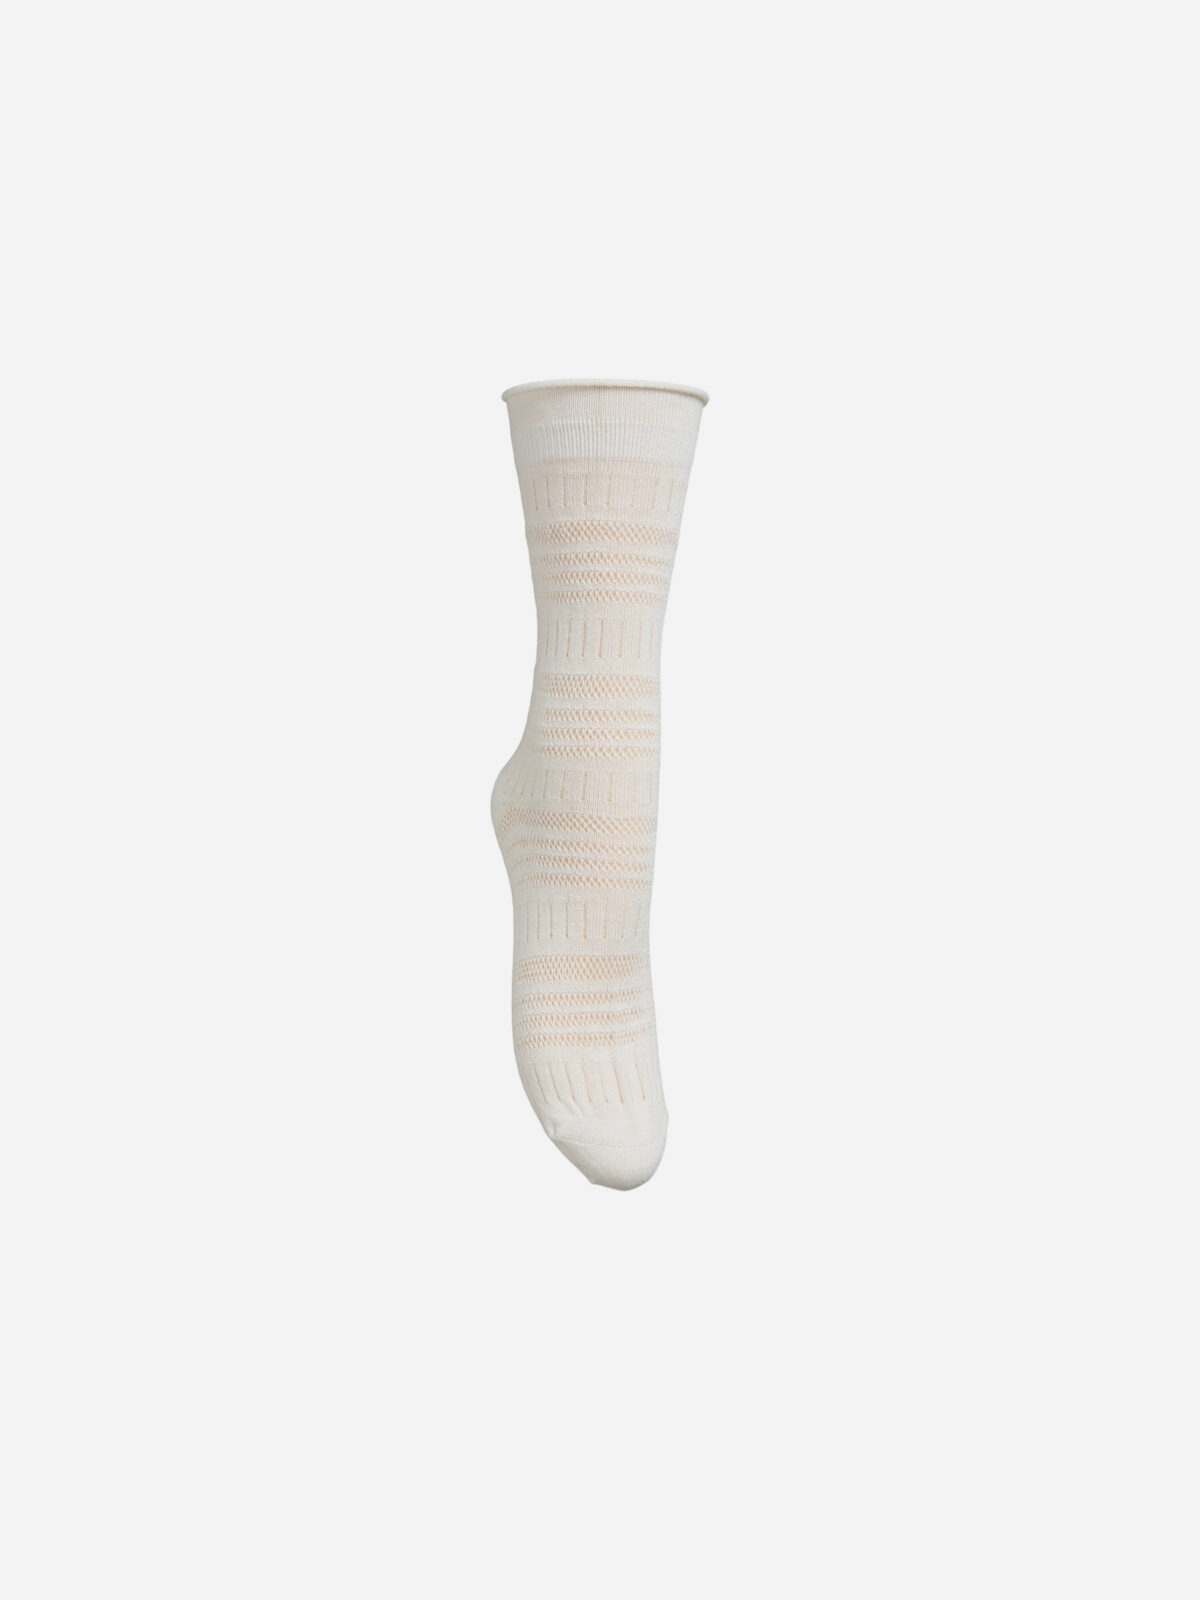 lucretia off white-knitted-socks-beck-sondergaard-matchboxathens